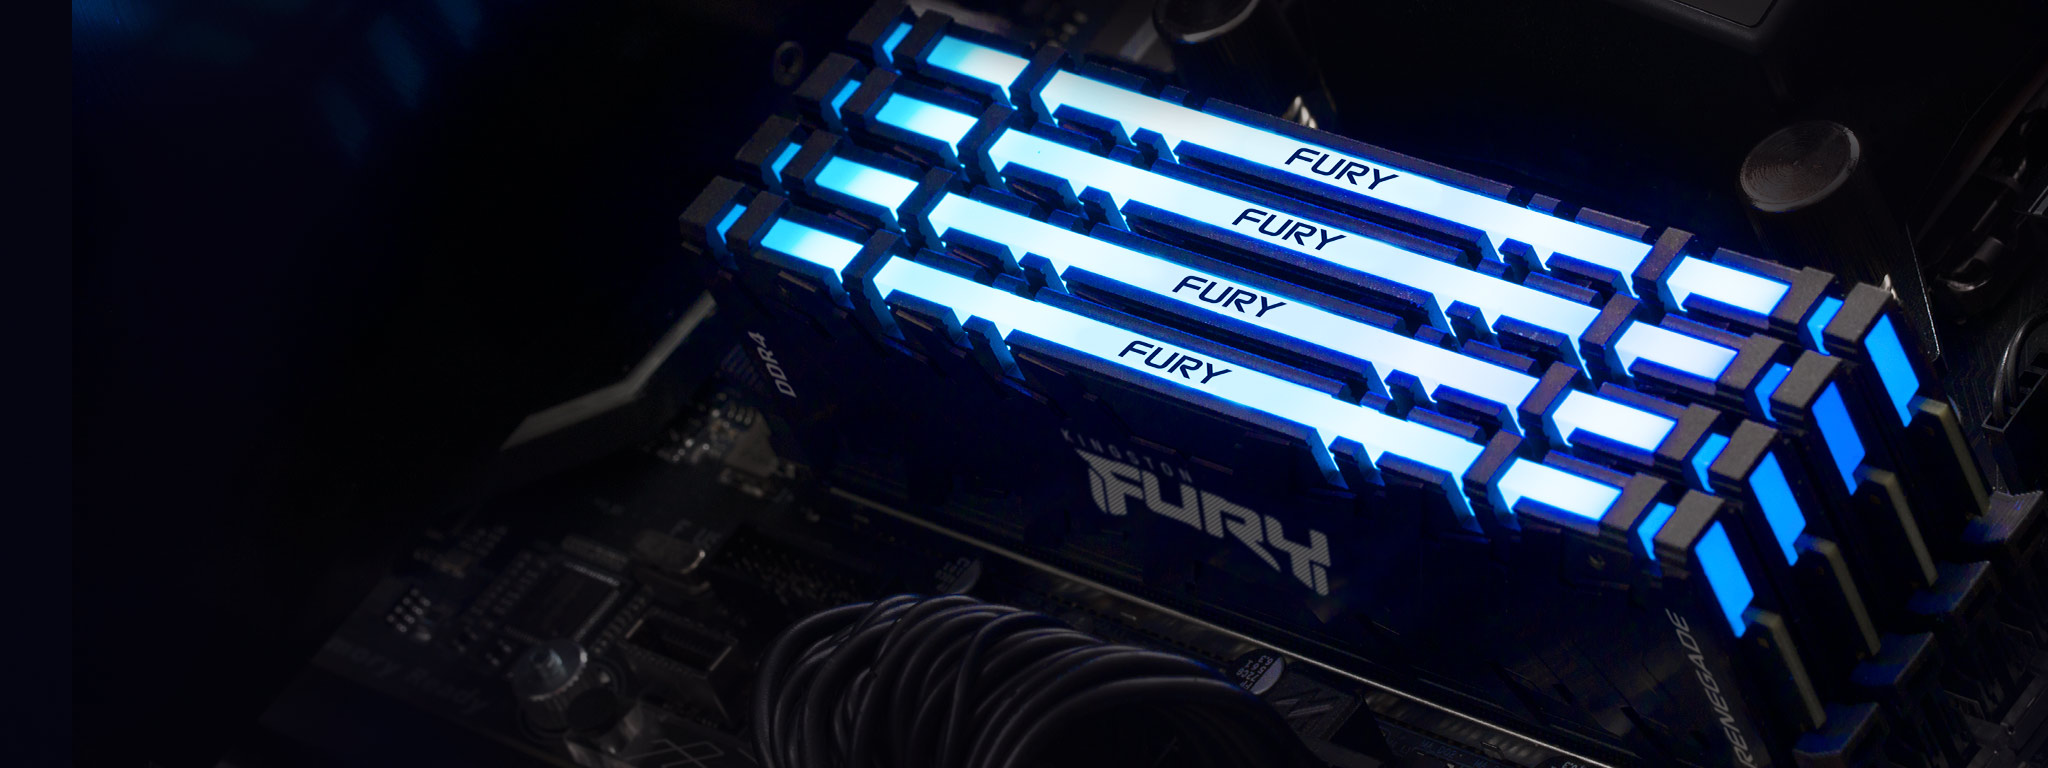 4 moduły pamięci Kingston FURY Renegade DDR4 RGB świece na niebiesko, zamontowane w gniazdach pamięci na płycie głównej